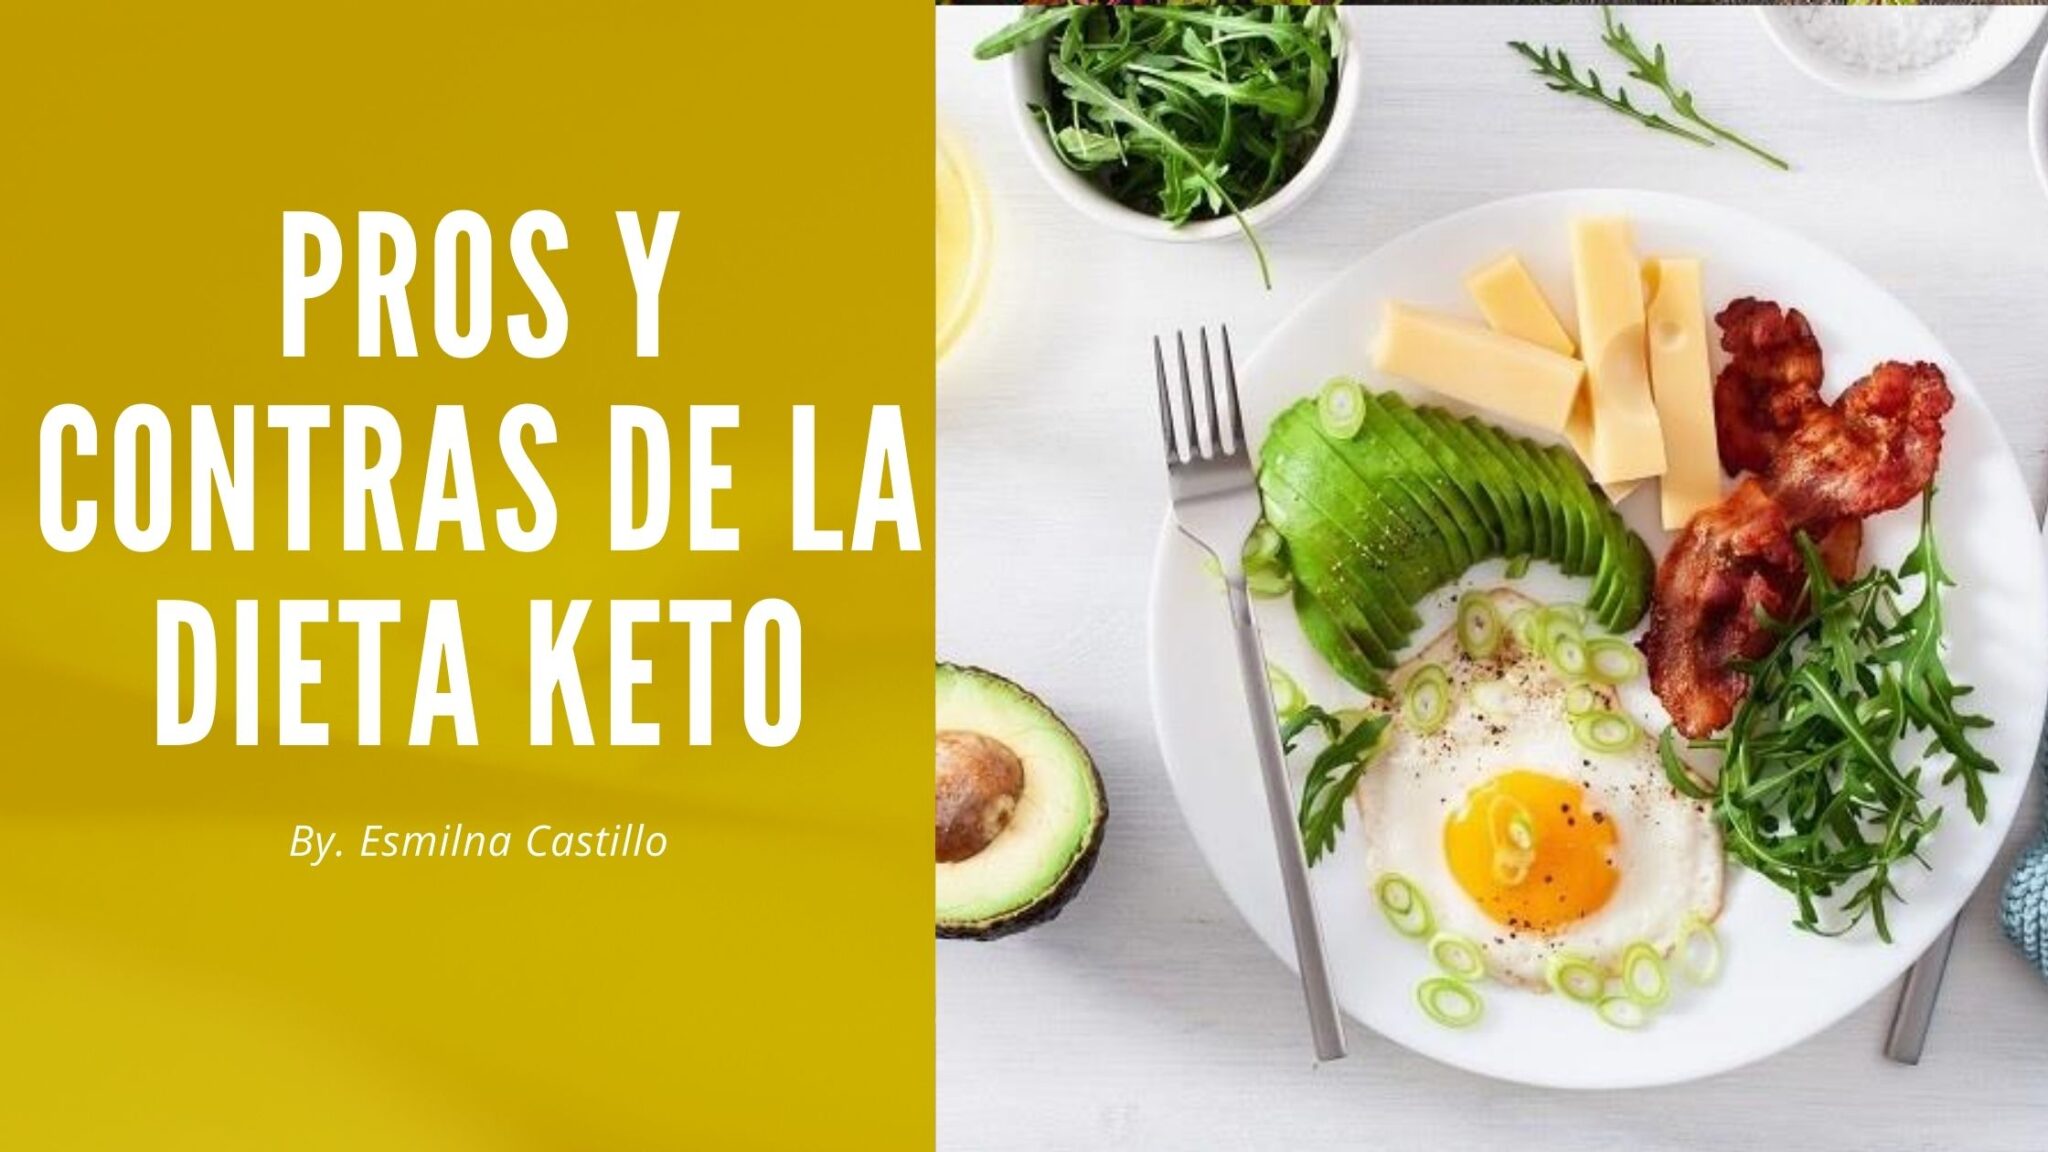 Pros Y Contras De La Dieta Keto Esmilna Castillo 6046